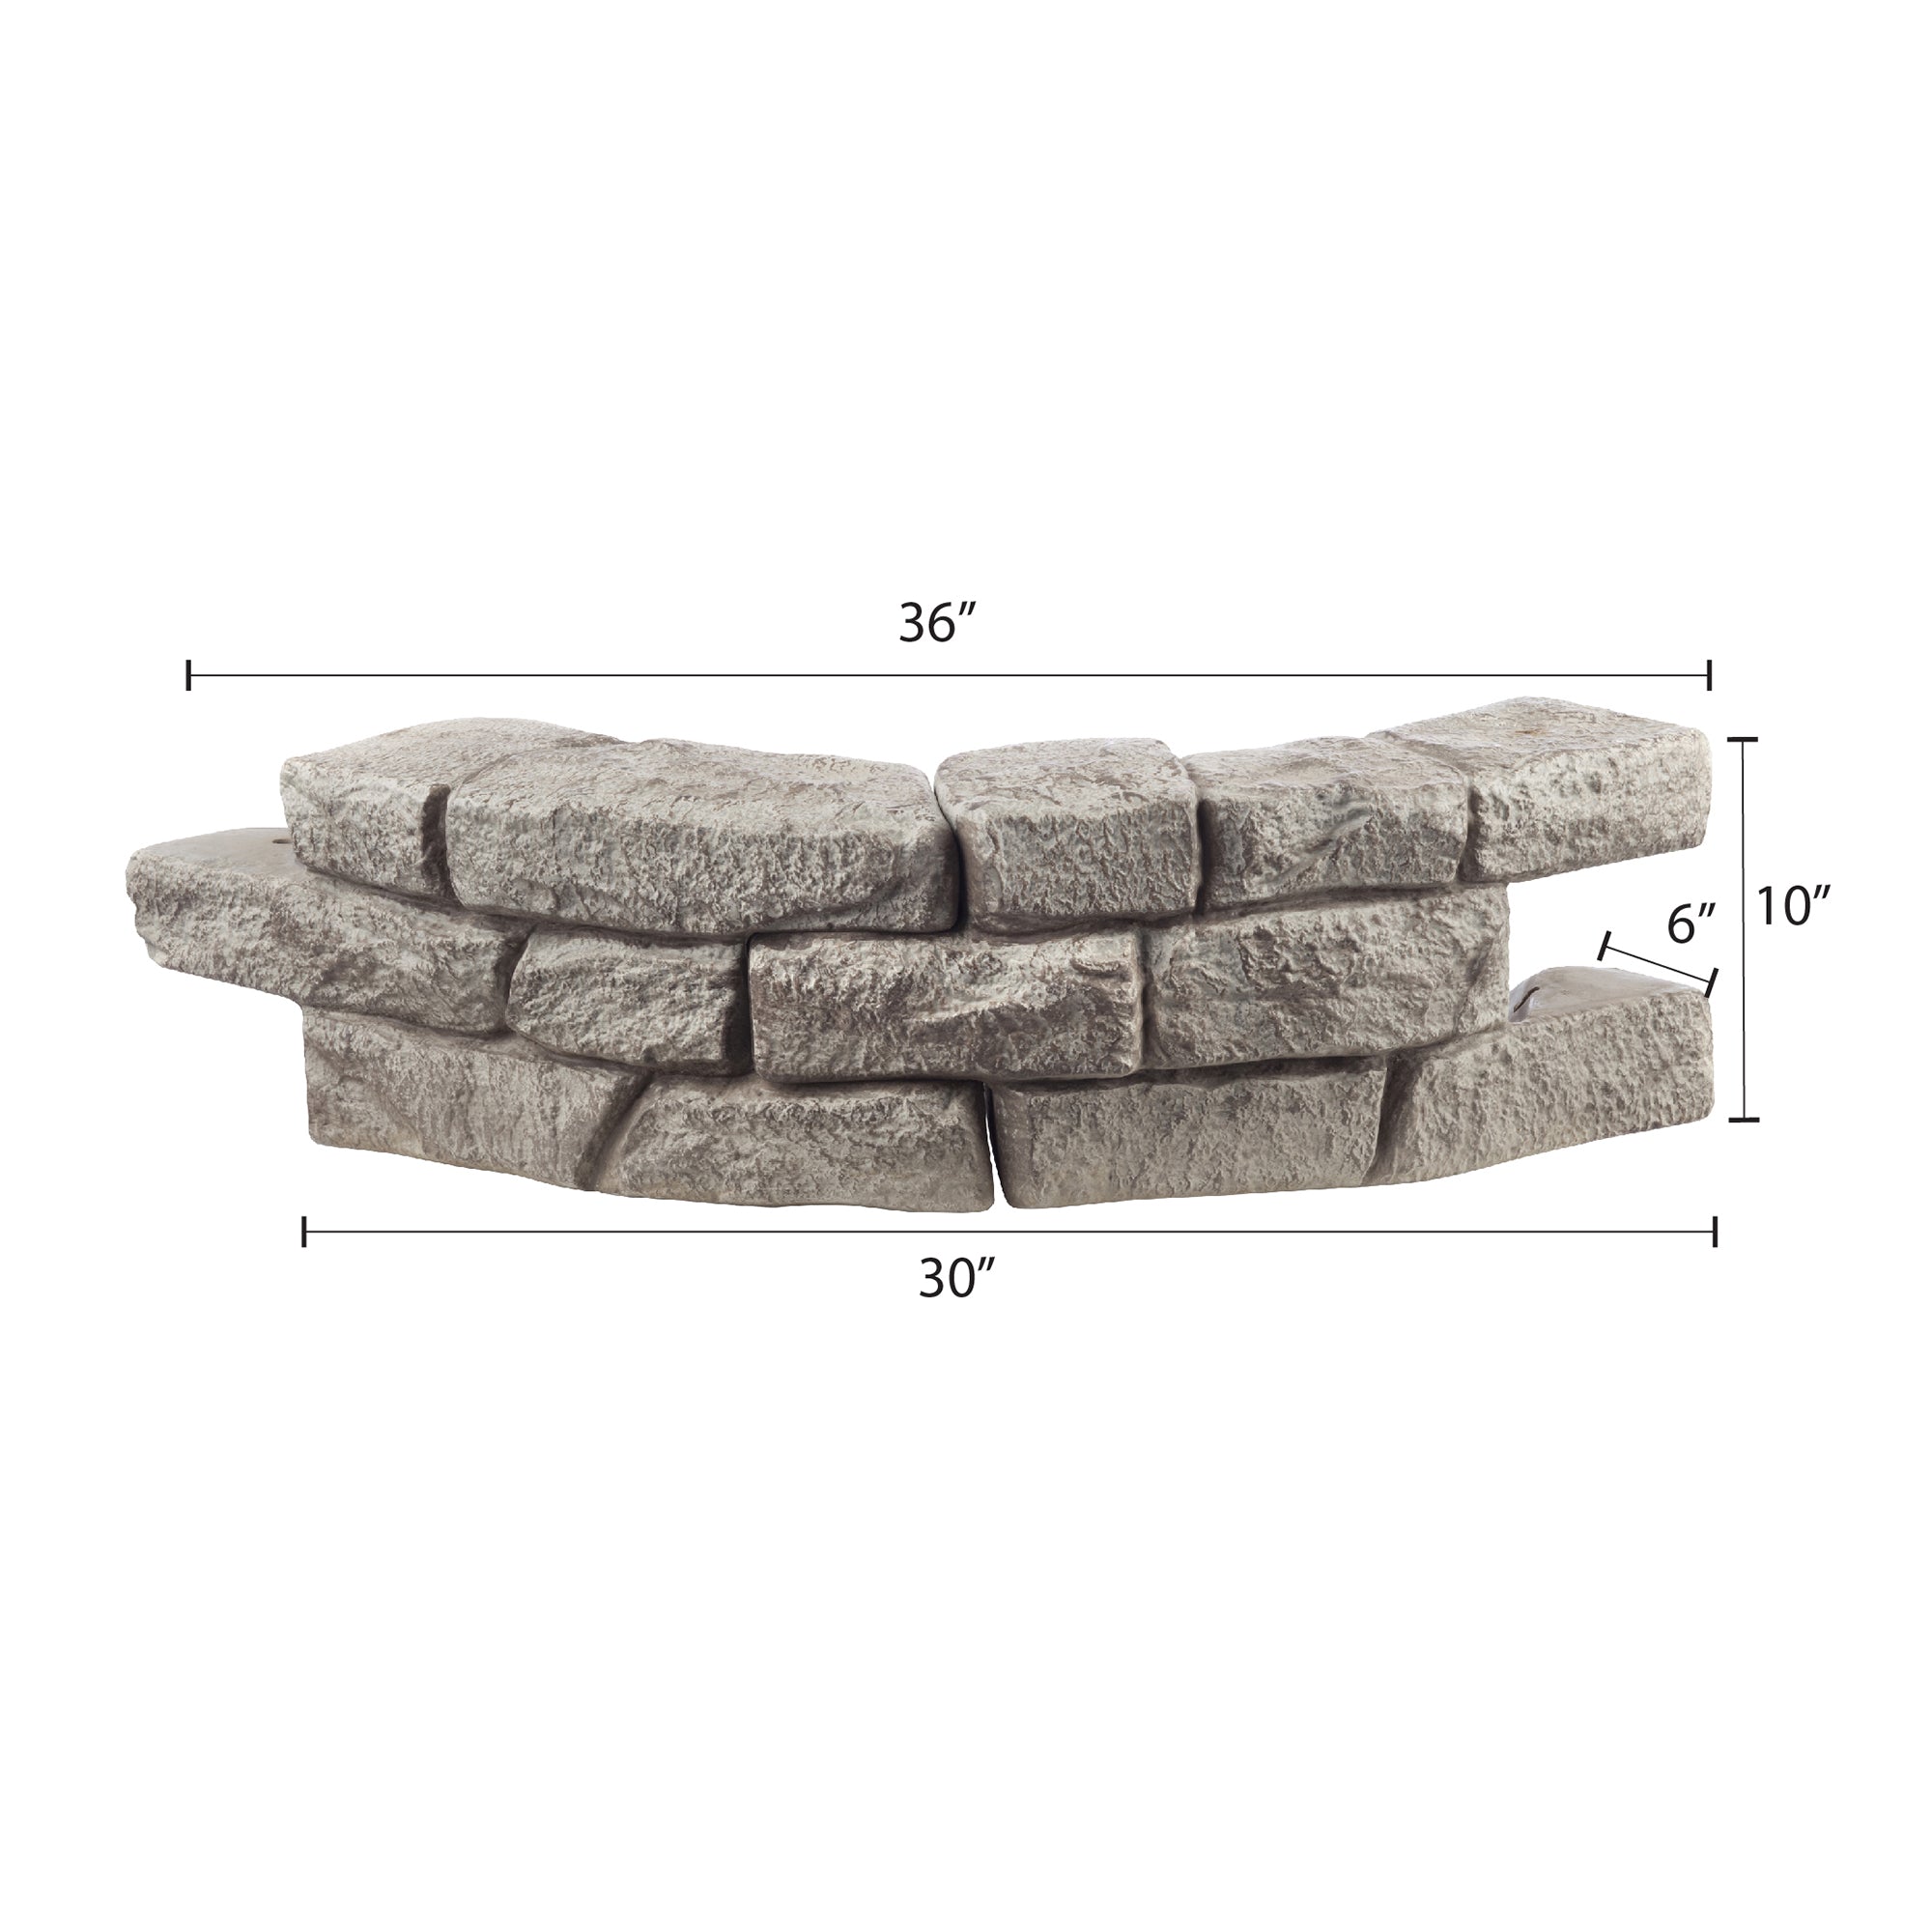 Rock Lock Raised Garden Bed Kit - 48 inch Round, 20 inch High